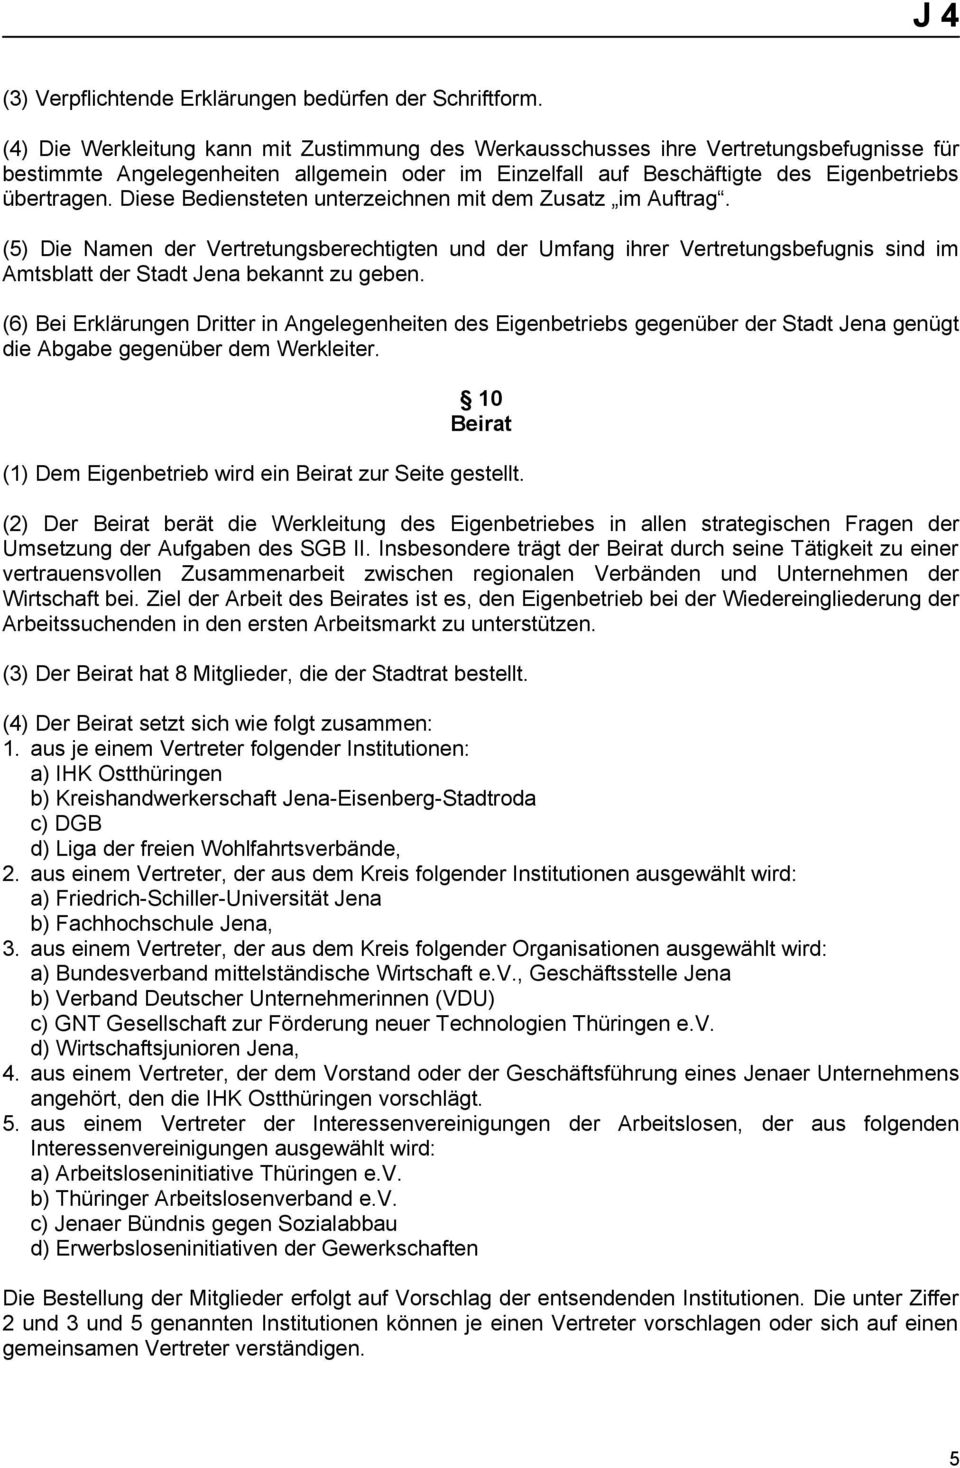 Diese Bediensteten unterzeichnen mit dem Zusatz im Auftrag. (5) Die Namen der Vertretungsberechtigten und der Umfang ihrer Vertretungsbefugnis sind im Amtsblatt der Stadt Jena bekannt zu geben.